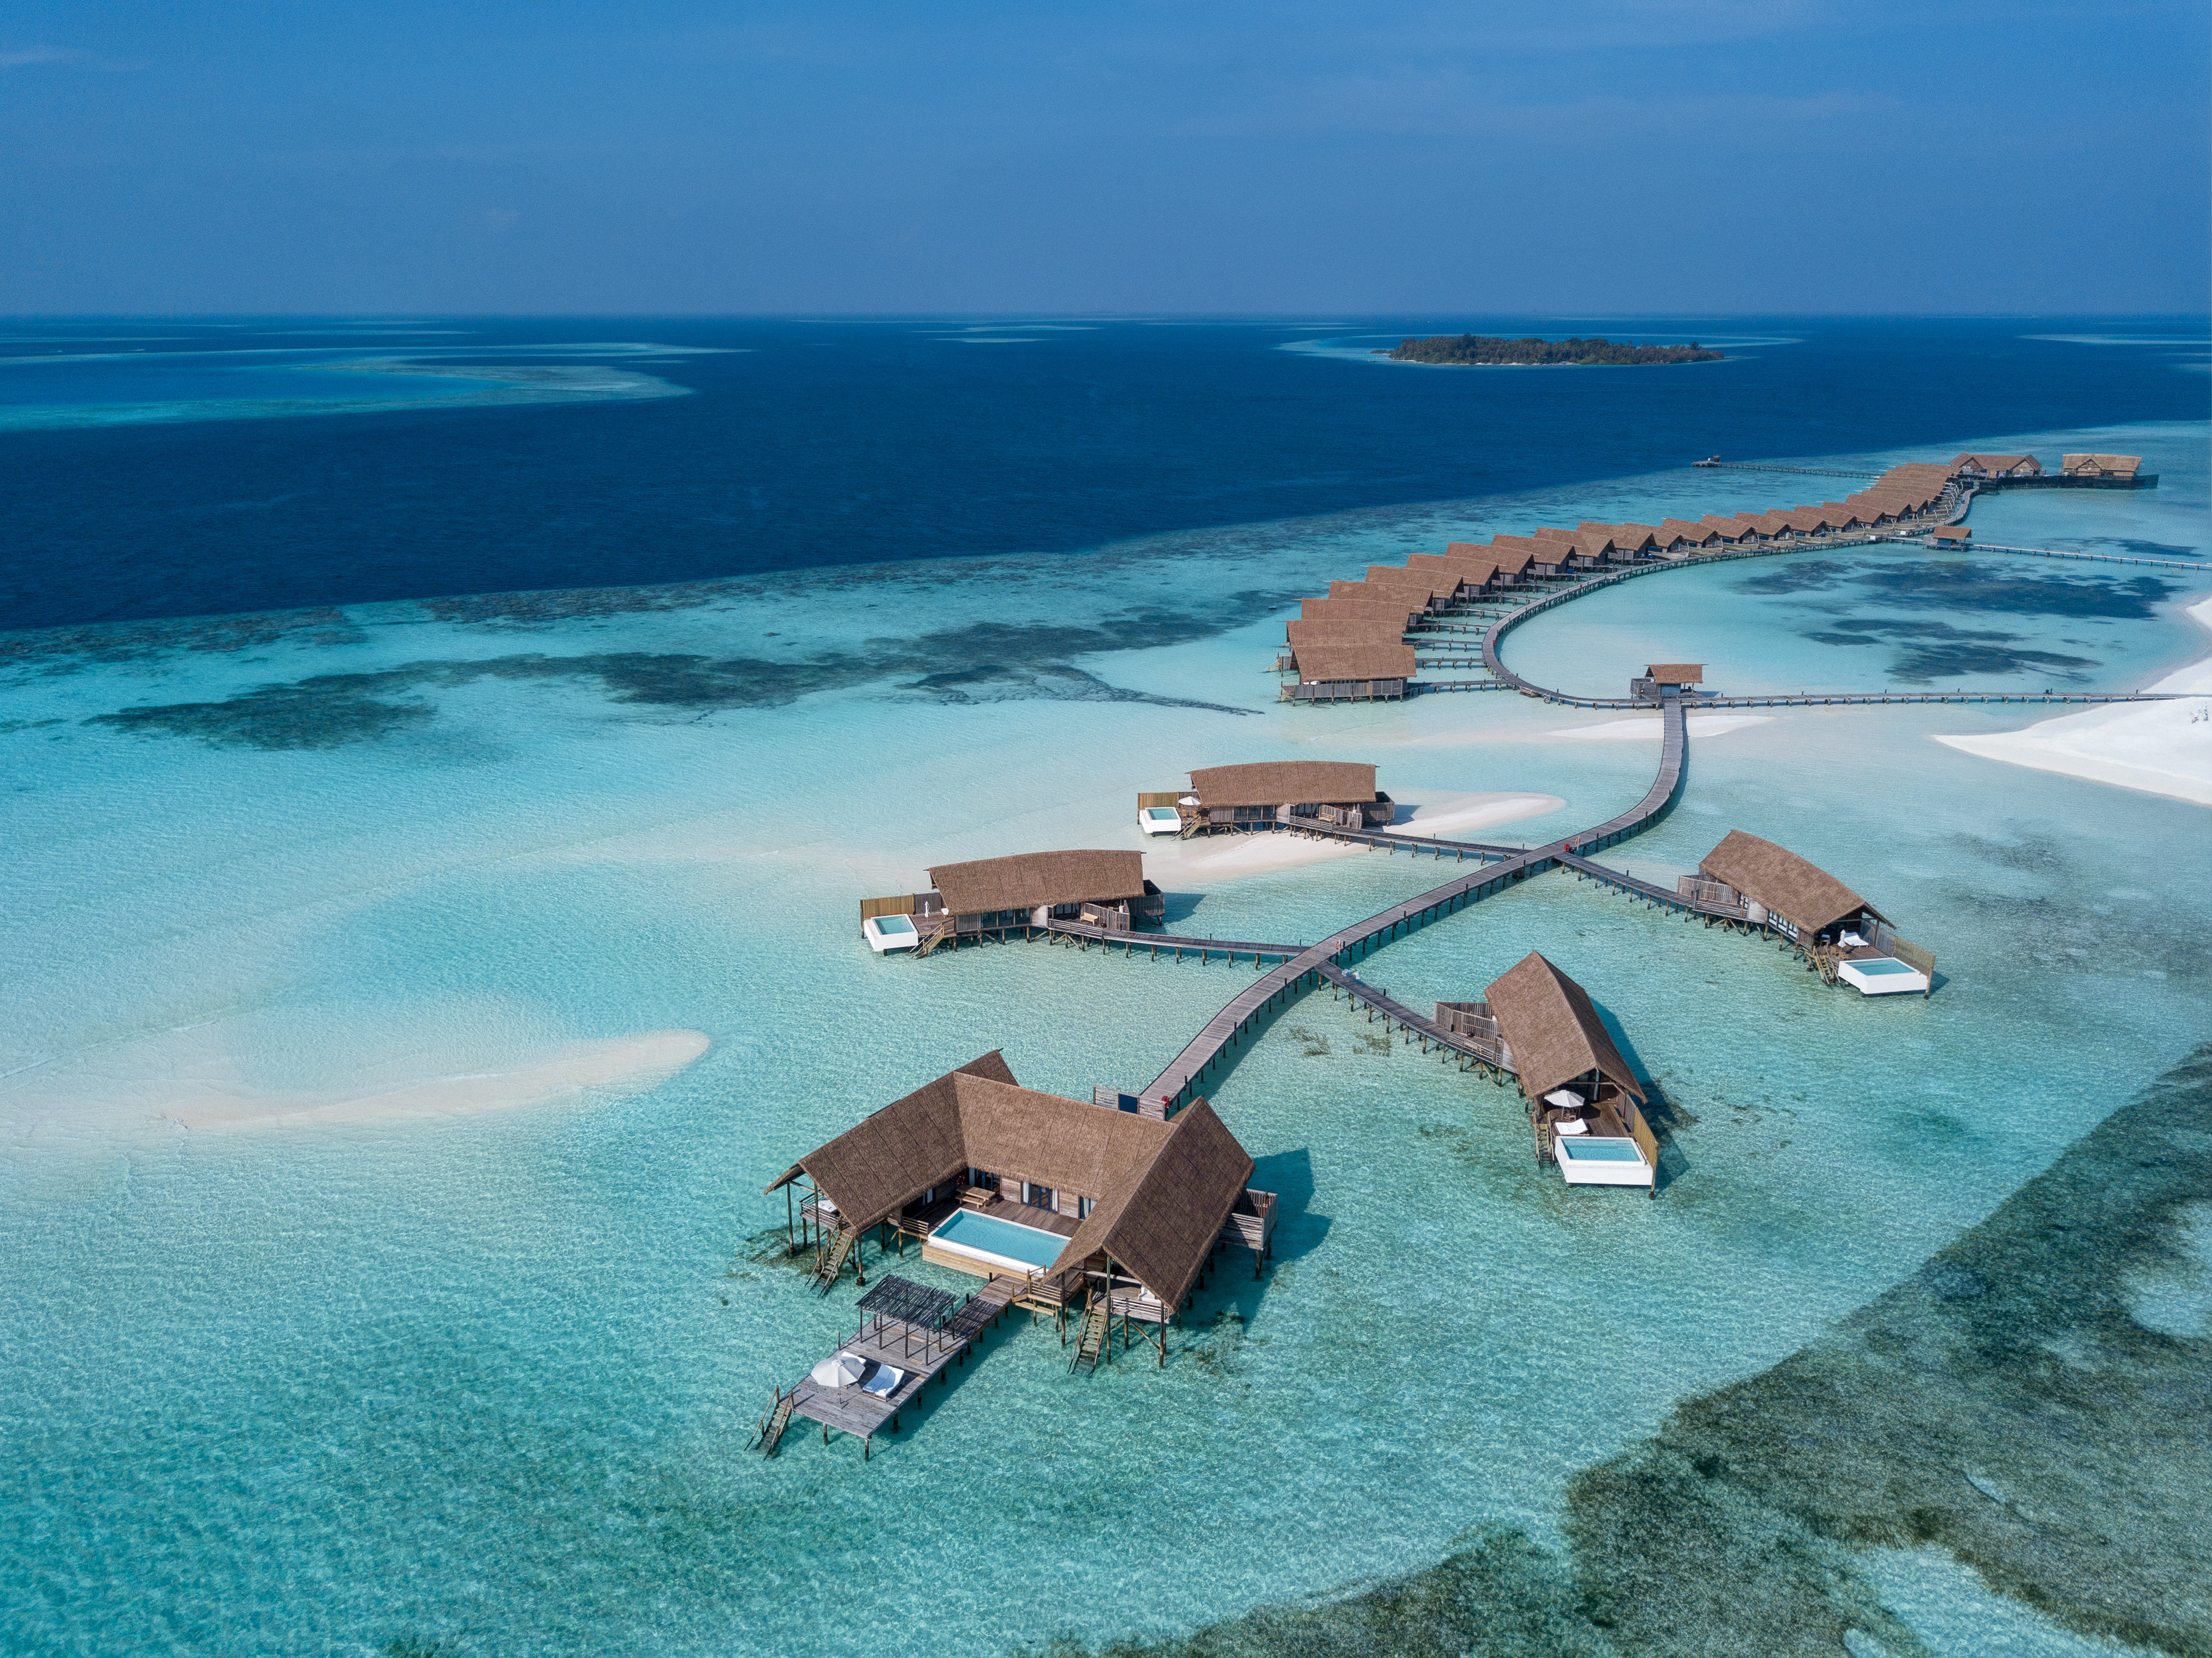 Foto de Como Resort Island - lugar popular entre os apreciadores de relaxamento